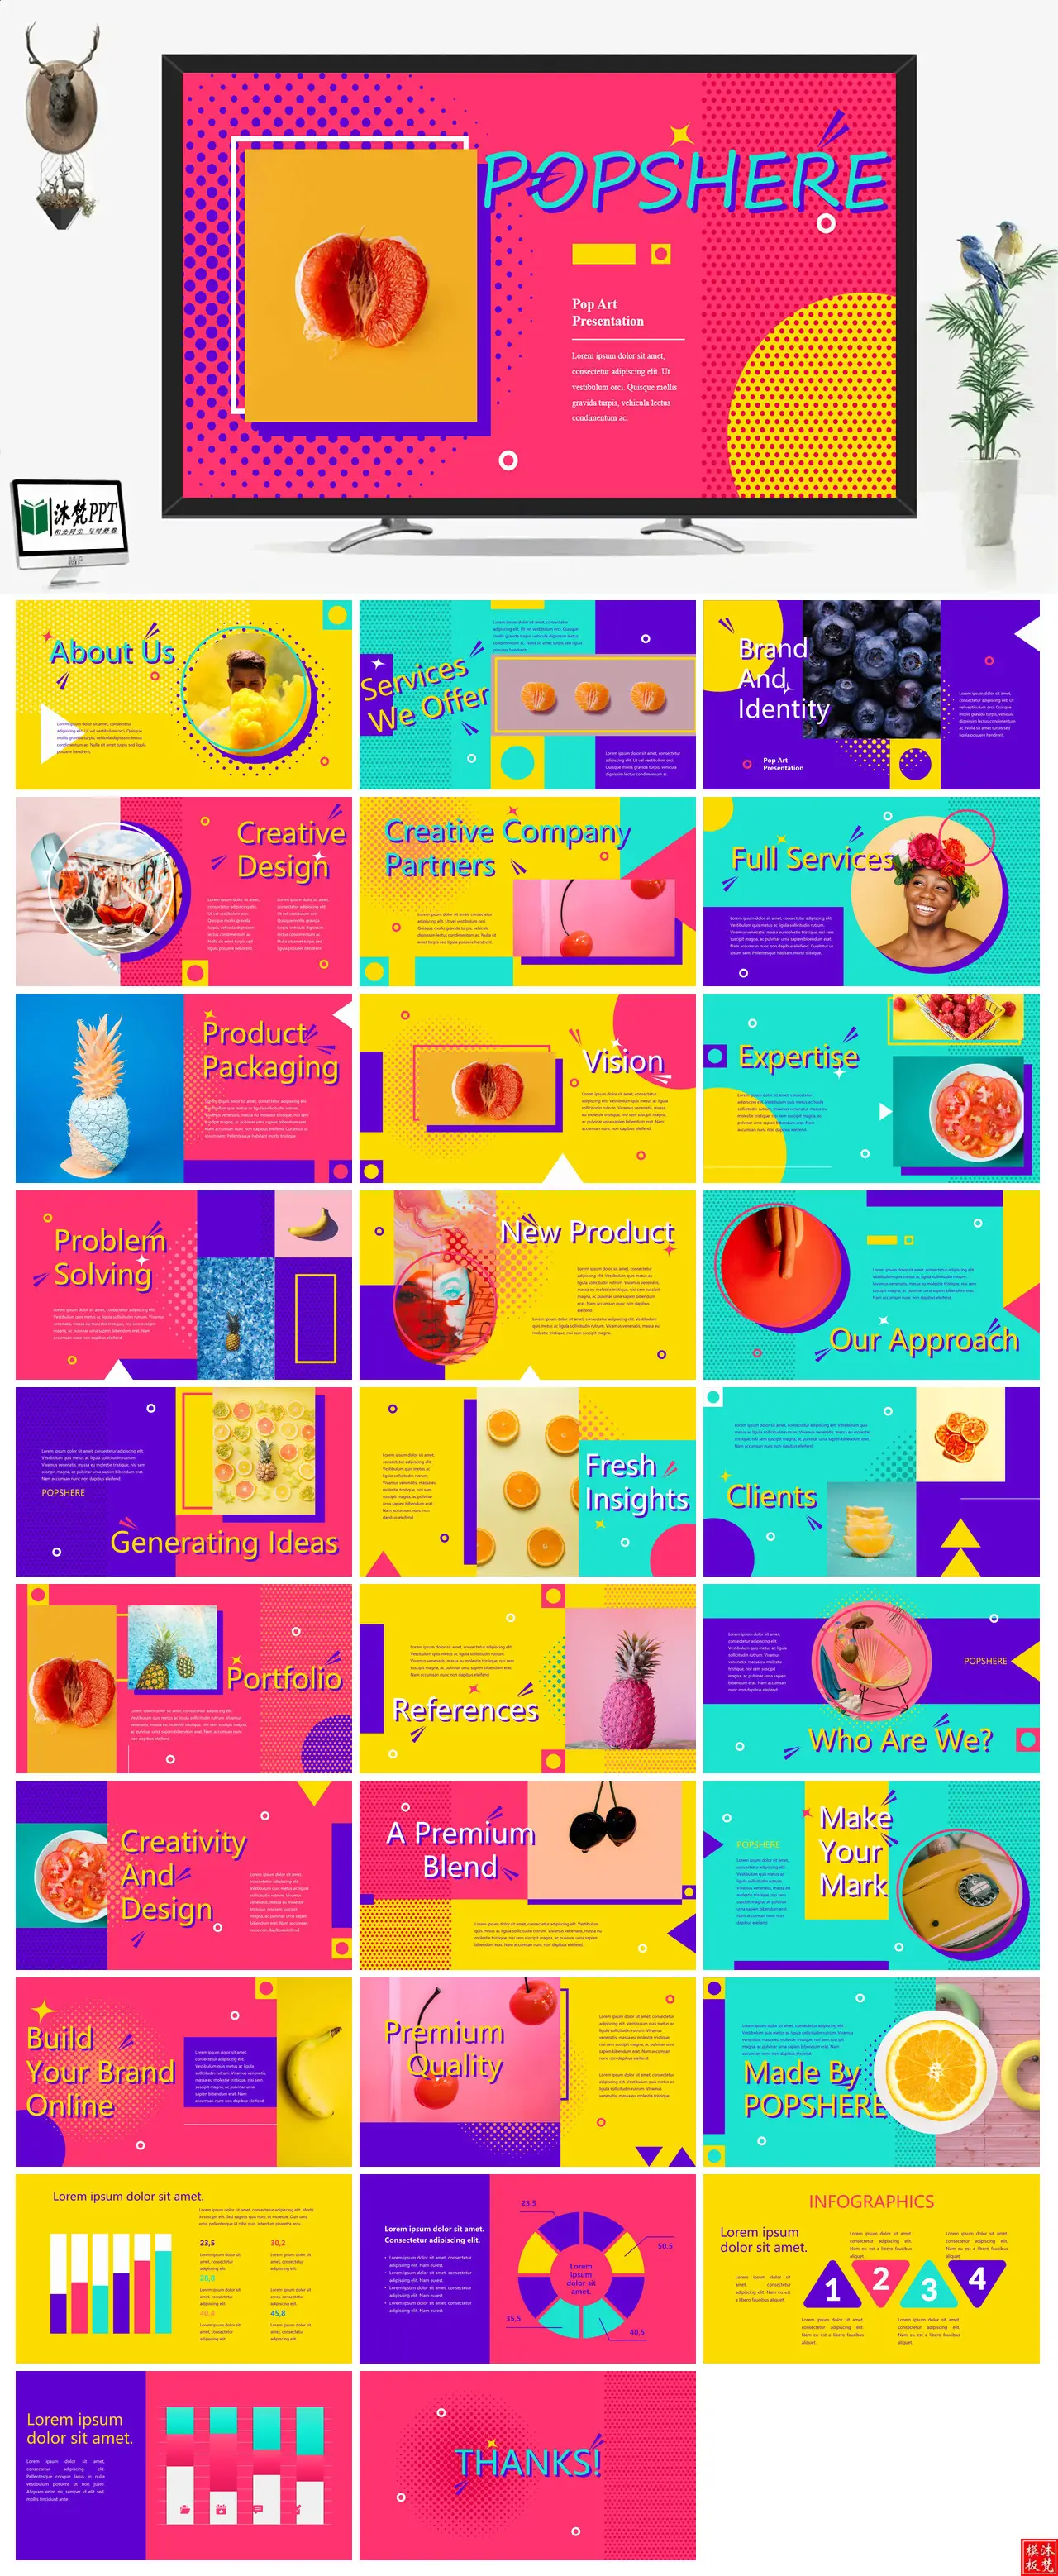 【0576】创意风活泼色彩系列英文缤纷水果介绍商品展示商业外贸PPT模板